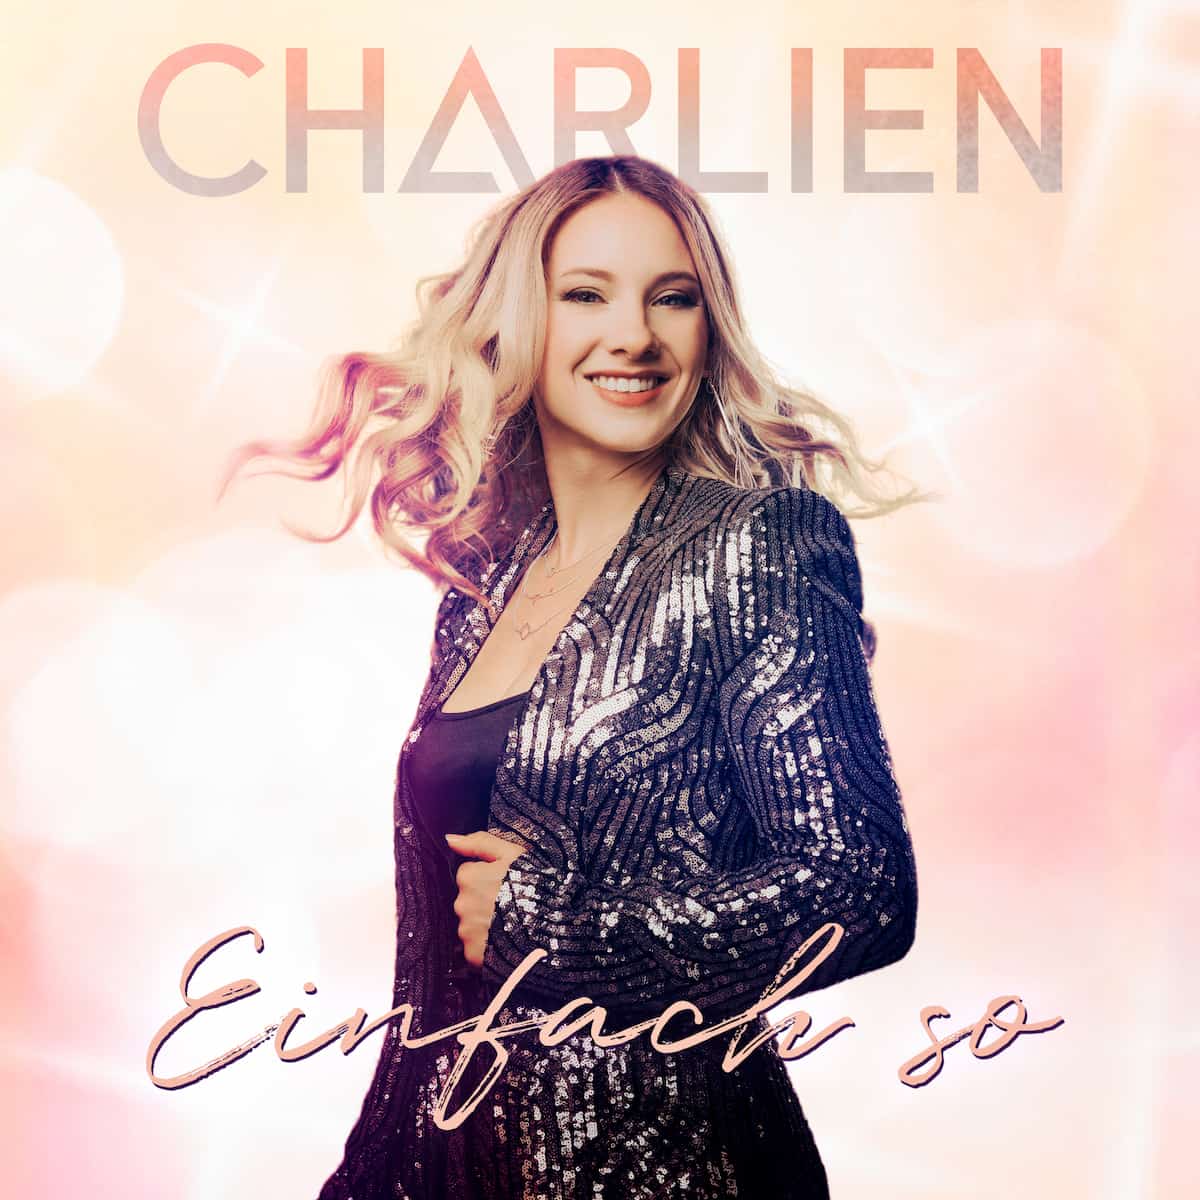 Charlien Schlager “Einfach so” 2023 - hier im Bild das Cover zur Single und dem Mini-Album mit der Sängerin Charlien Egger als Portrait